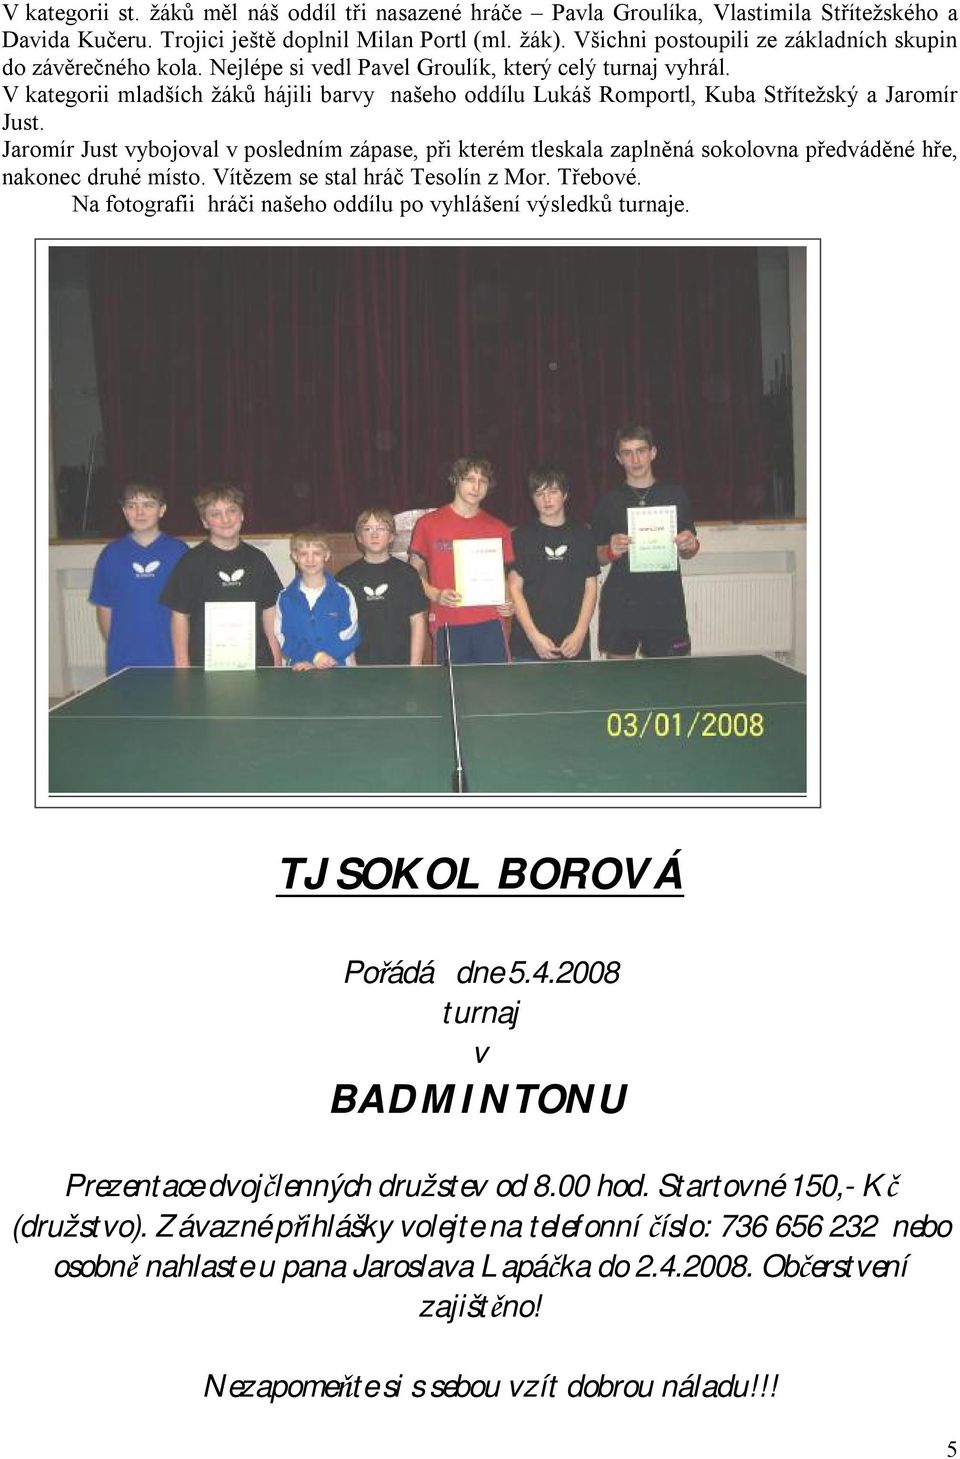 V kategorii mladších žáků hájili barvy našeho oddílu Lukáš Romportl, Kuba Střítežský a Jaromír Just.